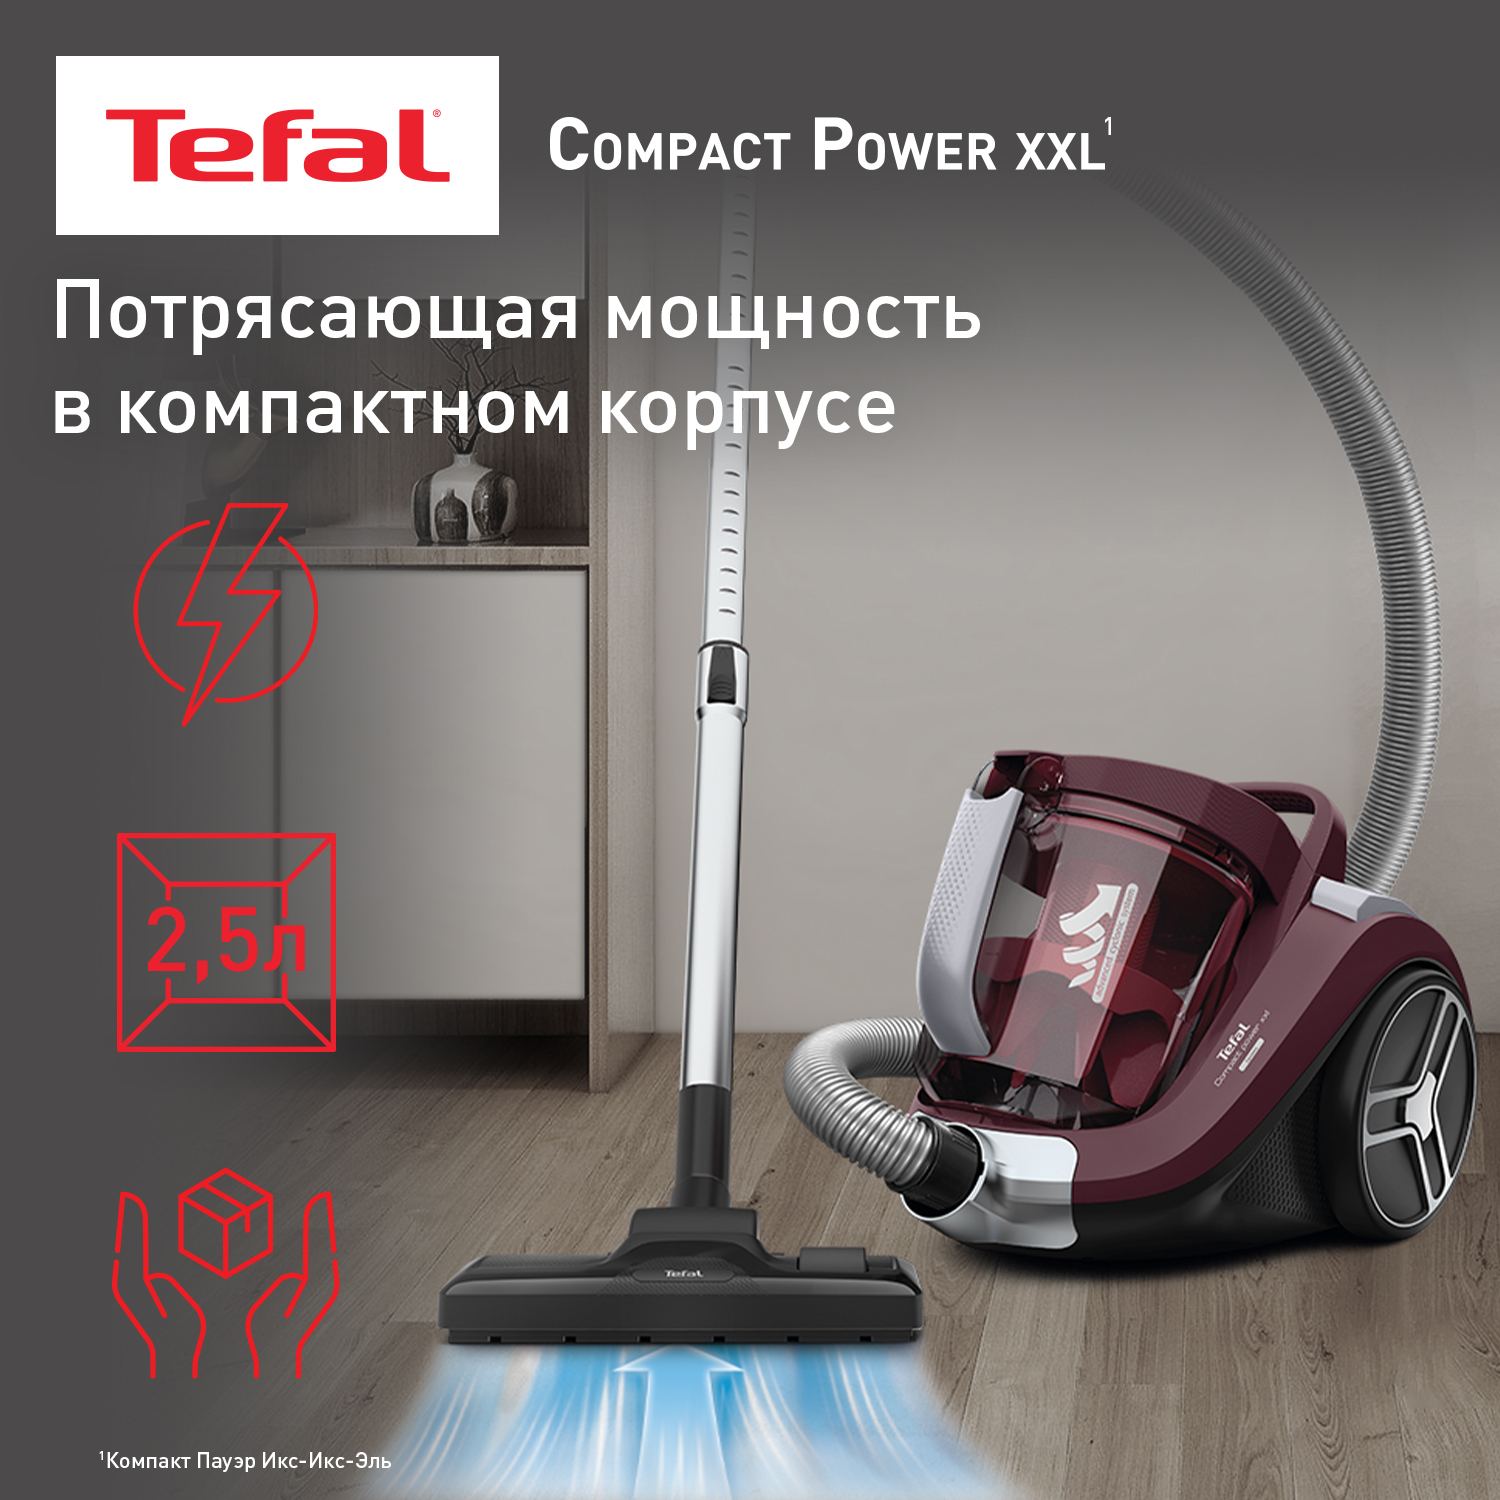 Пылесос Tefal Compact Power XXL (TW4873EA) Red, купить в Москве, цены в интернет-магазинах на Мегамаркет